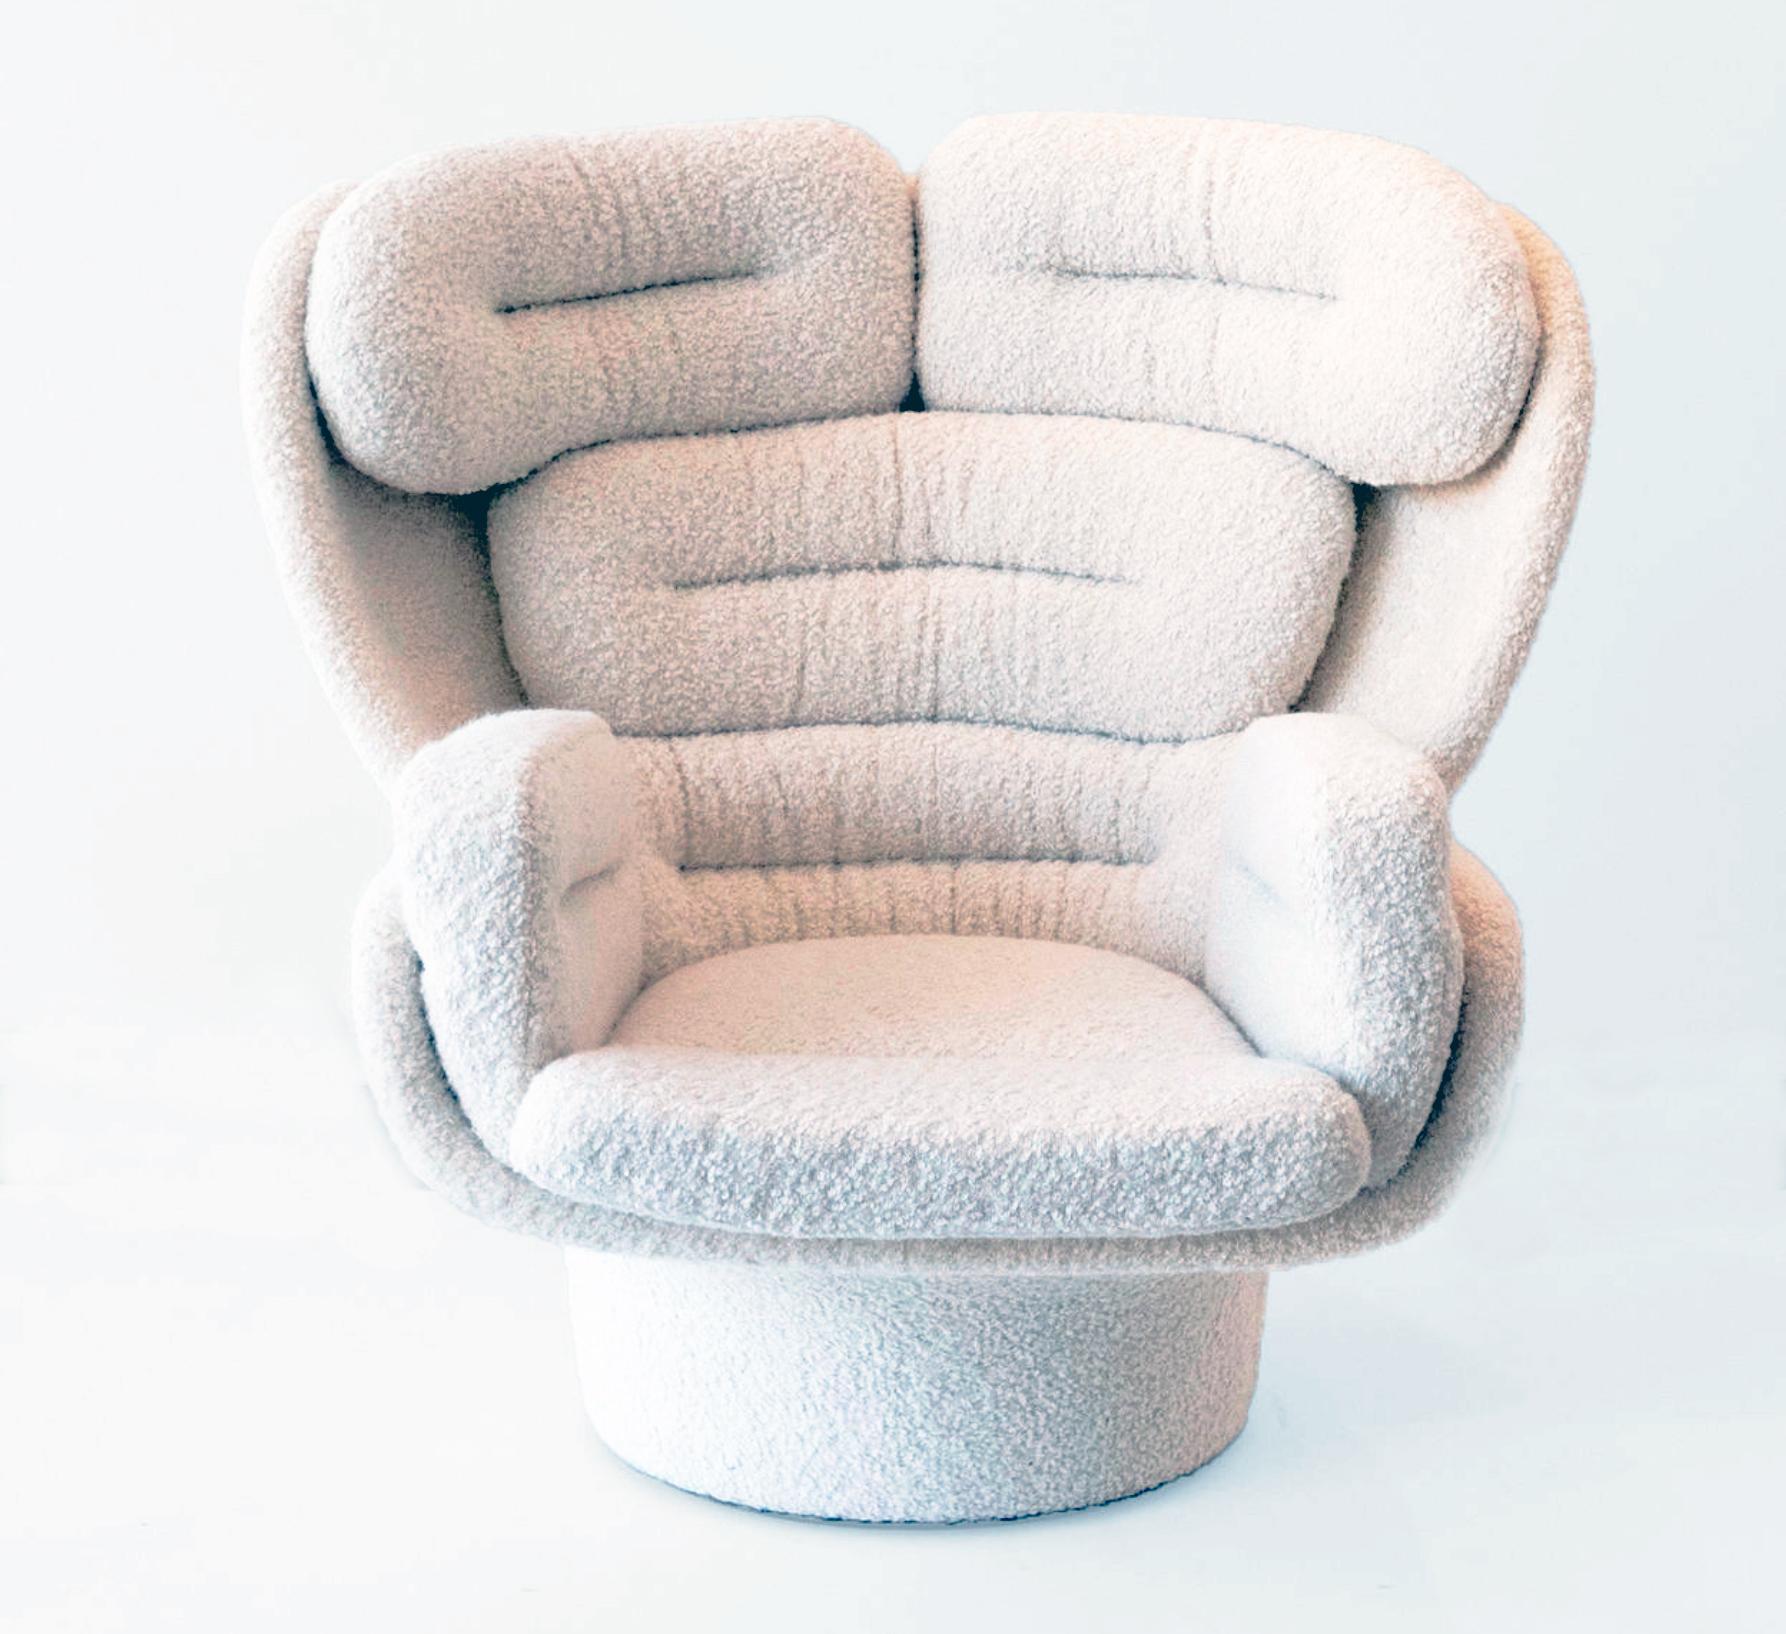 Lounge chair designed by Joe Colombo (1930-1971) in 1963 model 